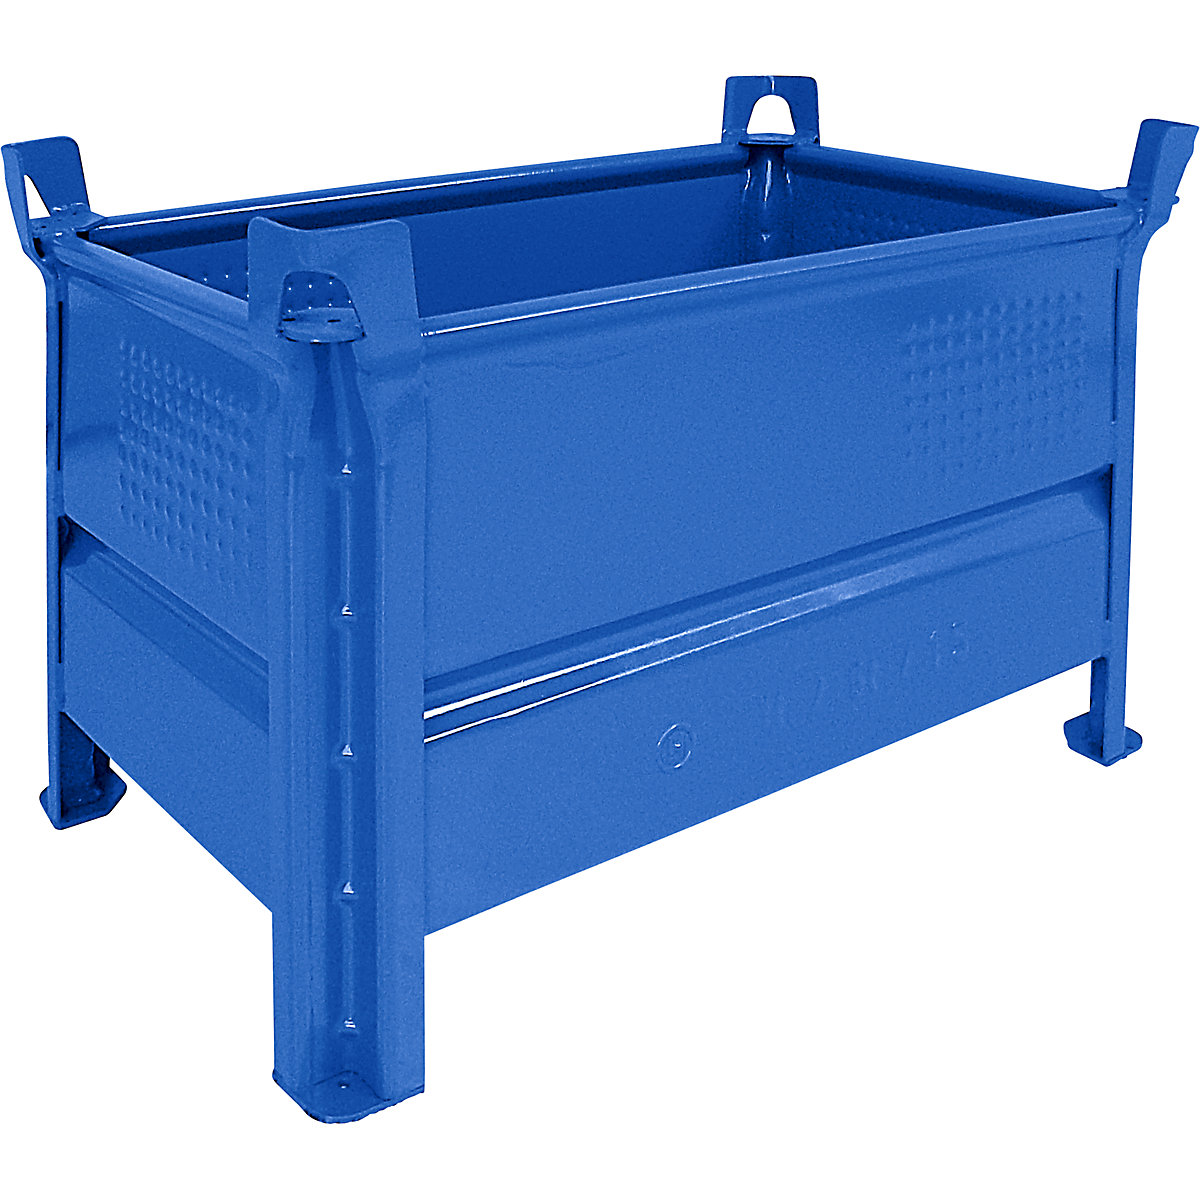 Stohovací přepravka s plnými stěnami – Heson, š x d 500 x 800 mm, nosnost 500 kg, modrá, od 5 ks-5